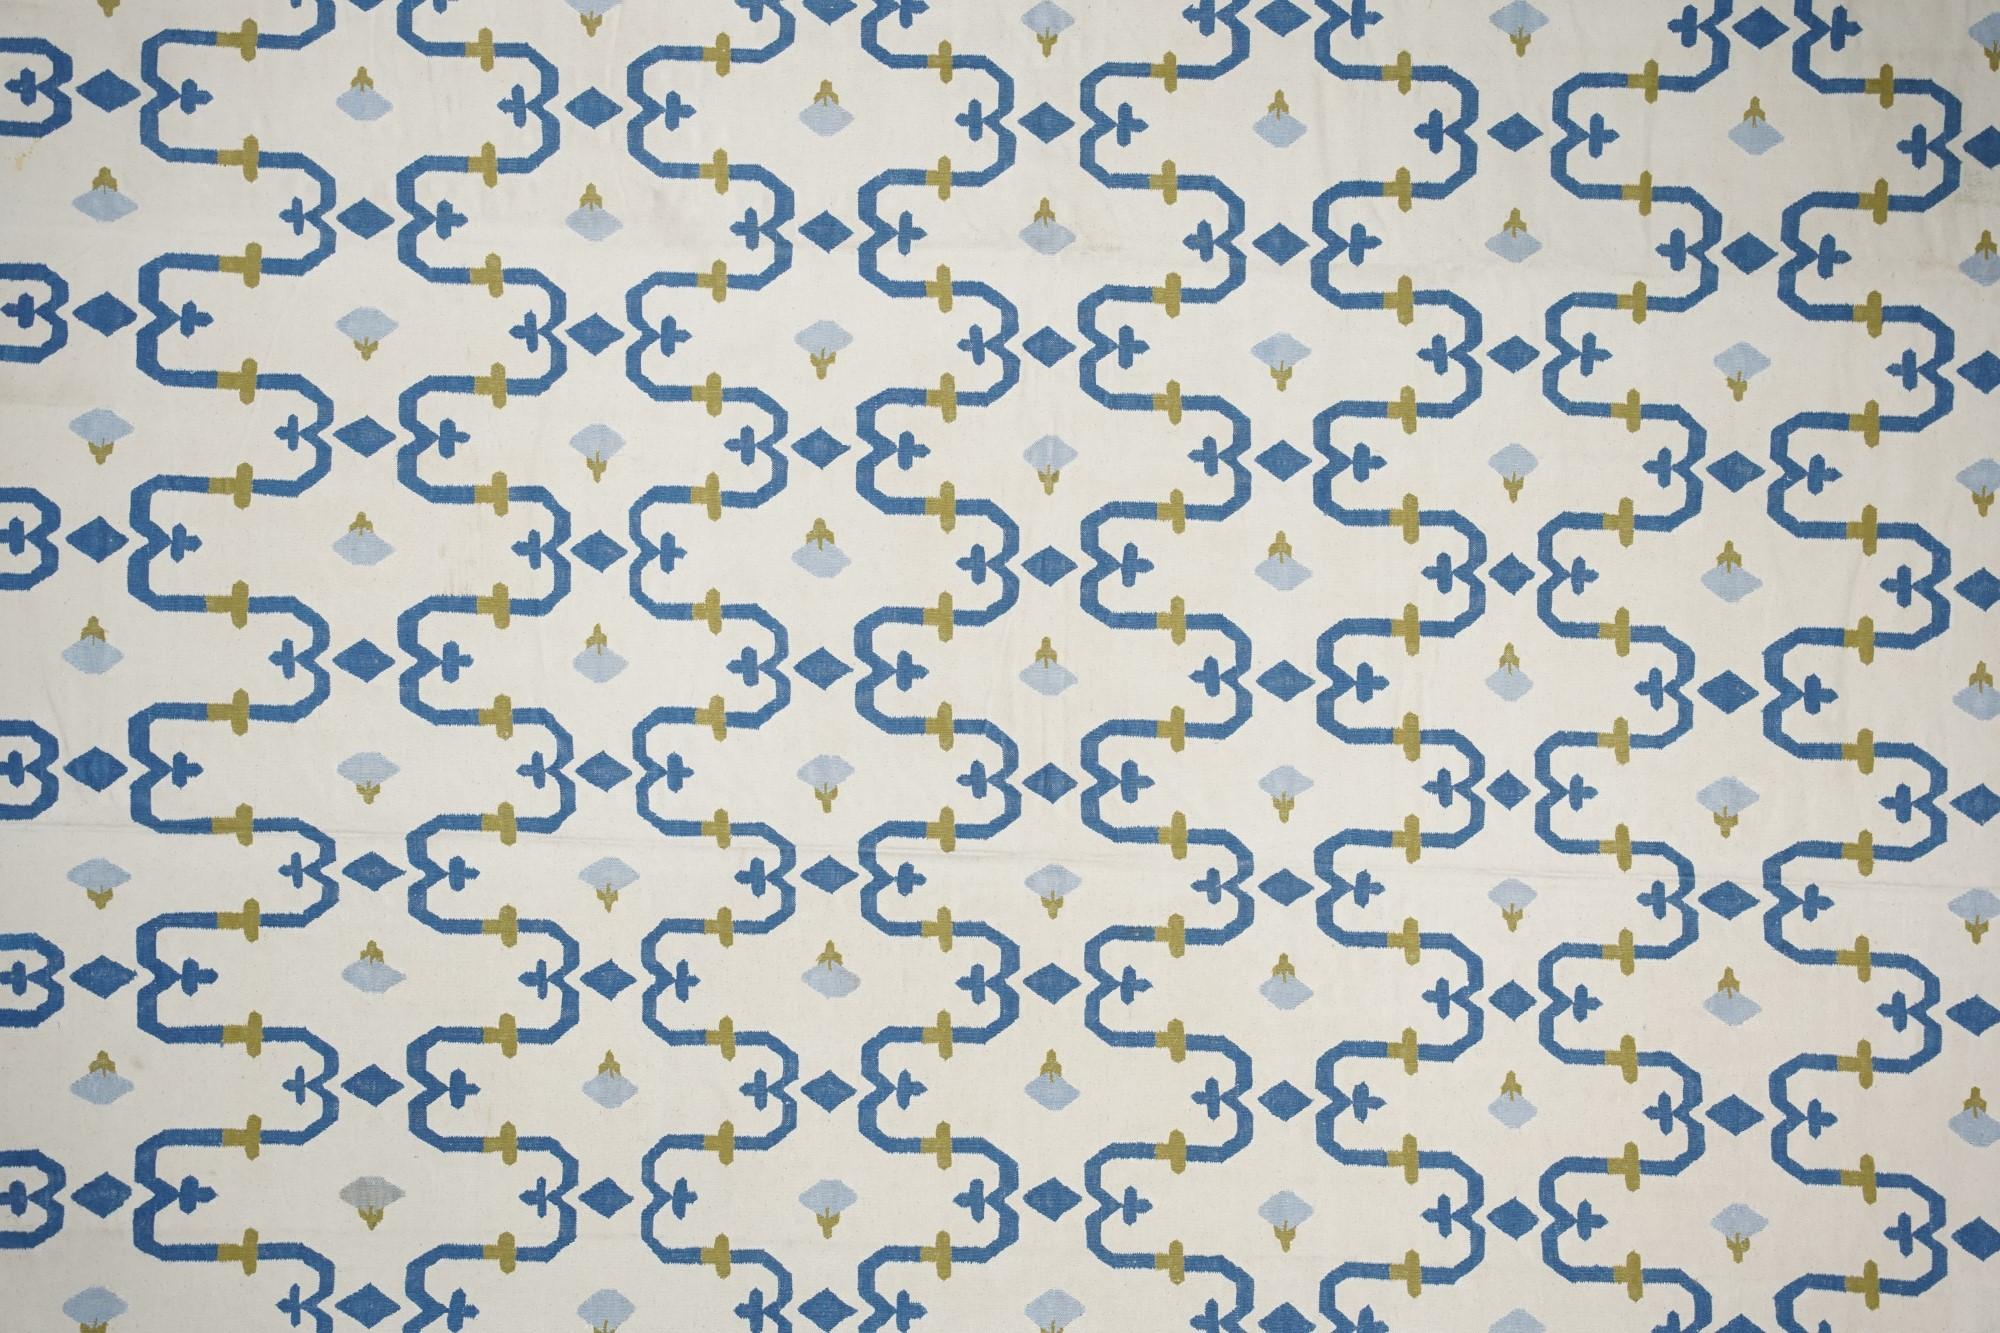 Dieser 10x14 große Teppich ist ein seltener Vintage-Dhurrie-Teppich aus einer aufregenden neuen Mid-Century-Kuration von Rug &New Kilim. Das handgewebte Flachgewebe aus Wolle stammt aus Indien (ca. 1950-1960) und weist blaue und goldene geometrische